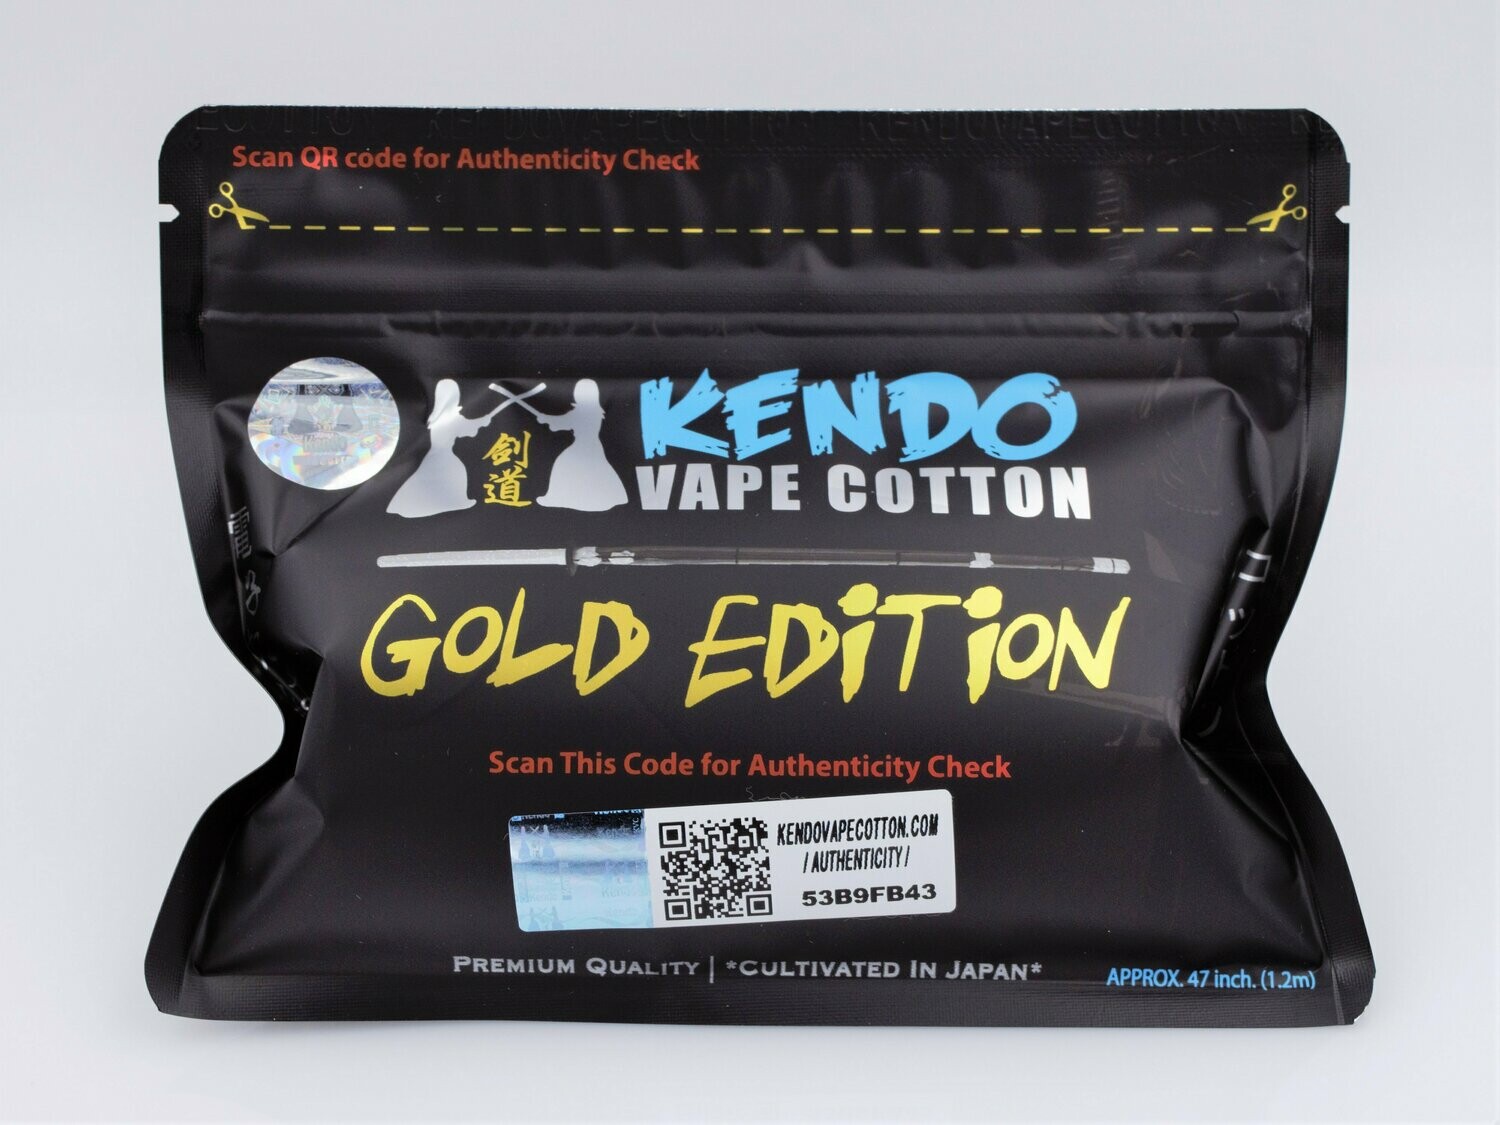 Kendo Vape Cotton GOLD Edition Pamuk %100 Orijinal